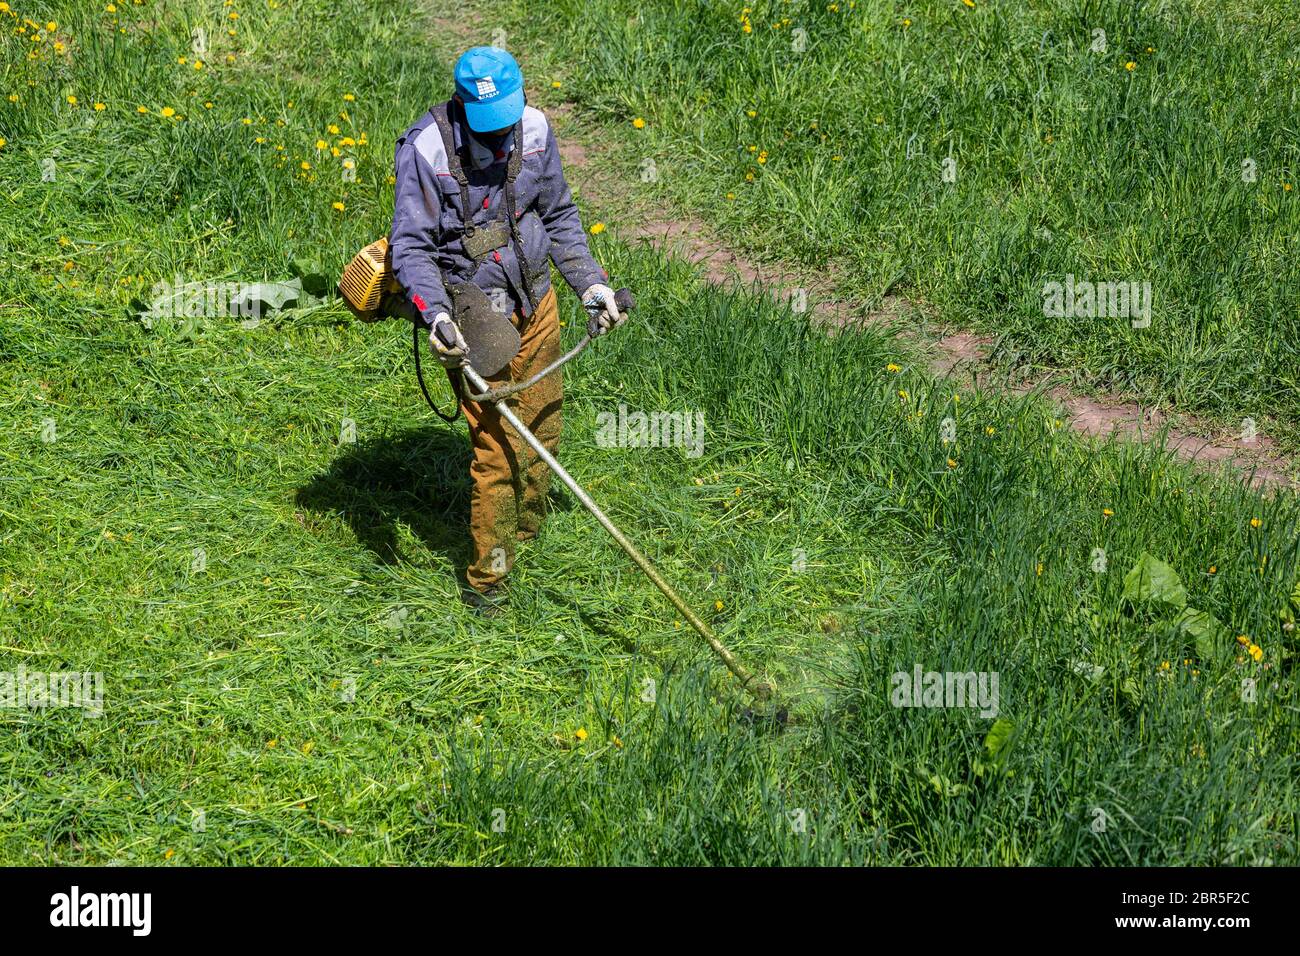 TULA, RUSSLAND - 19. MAI 2020: Russischer offizieller Rasenmäher Arbeiter Mann schneidet grünes Gras mit zwei-Zyklus-Motor-Saitentrimmer. Ansicht von oben nach unten. Stockfoto